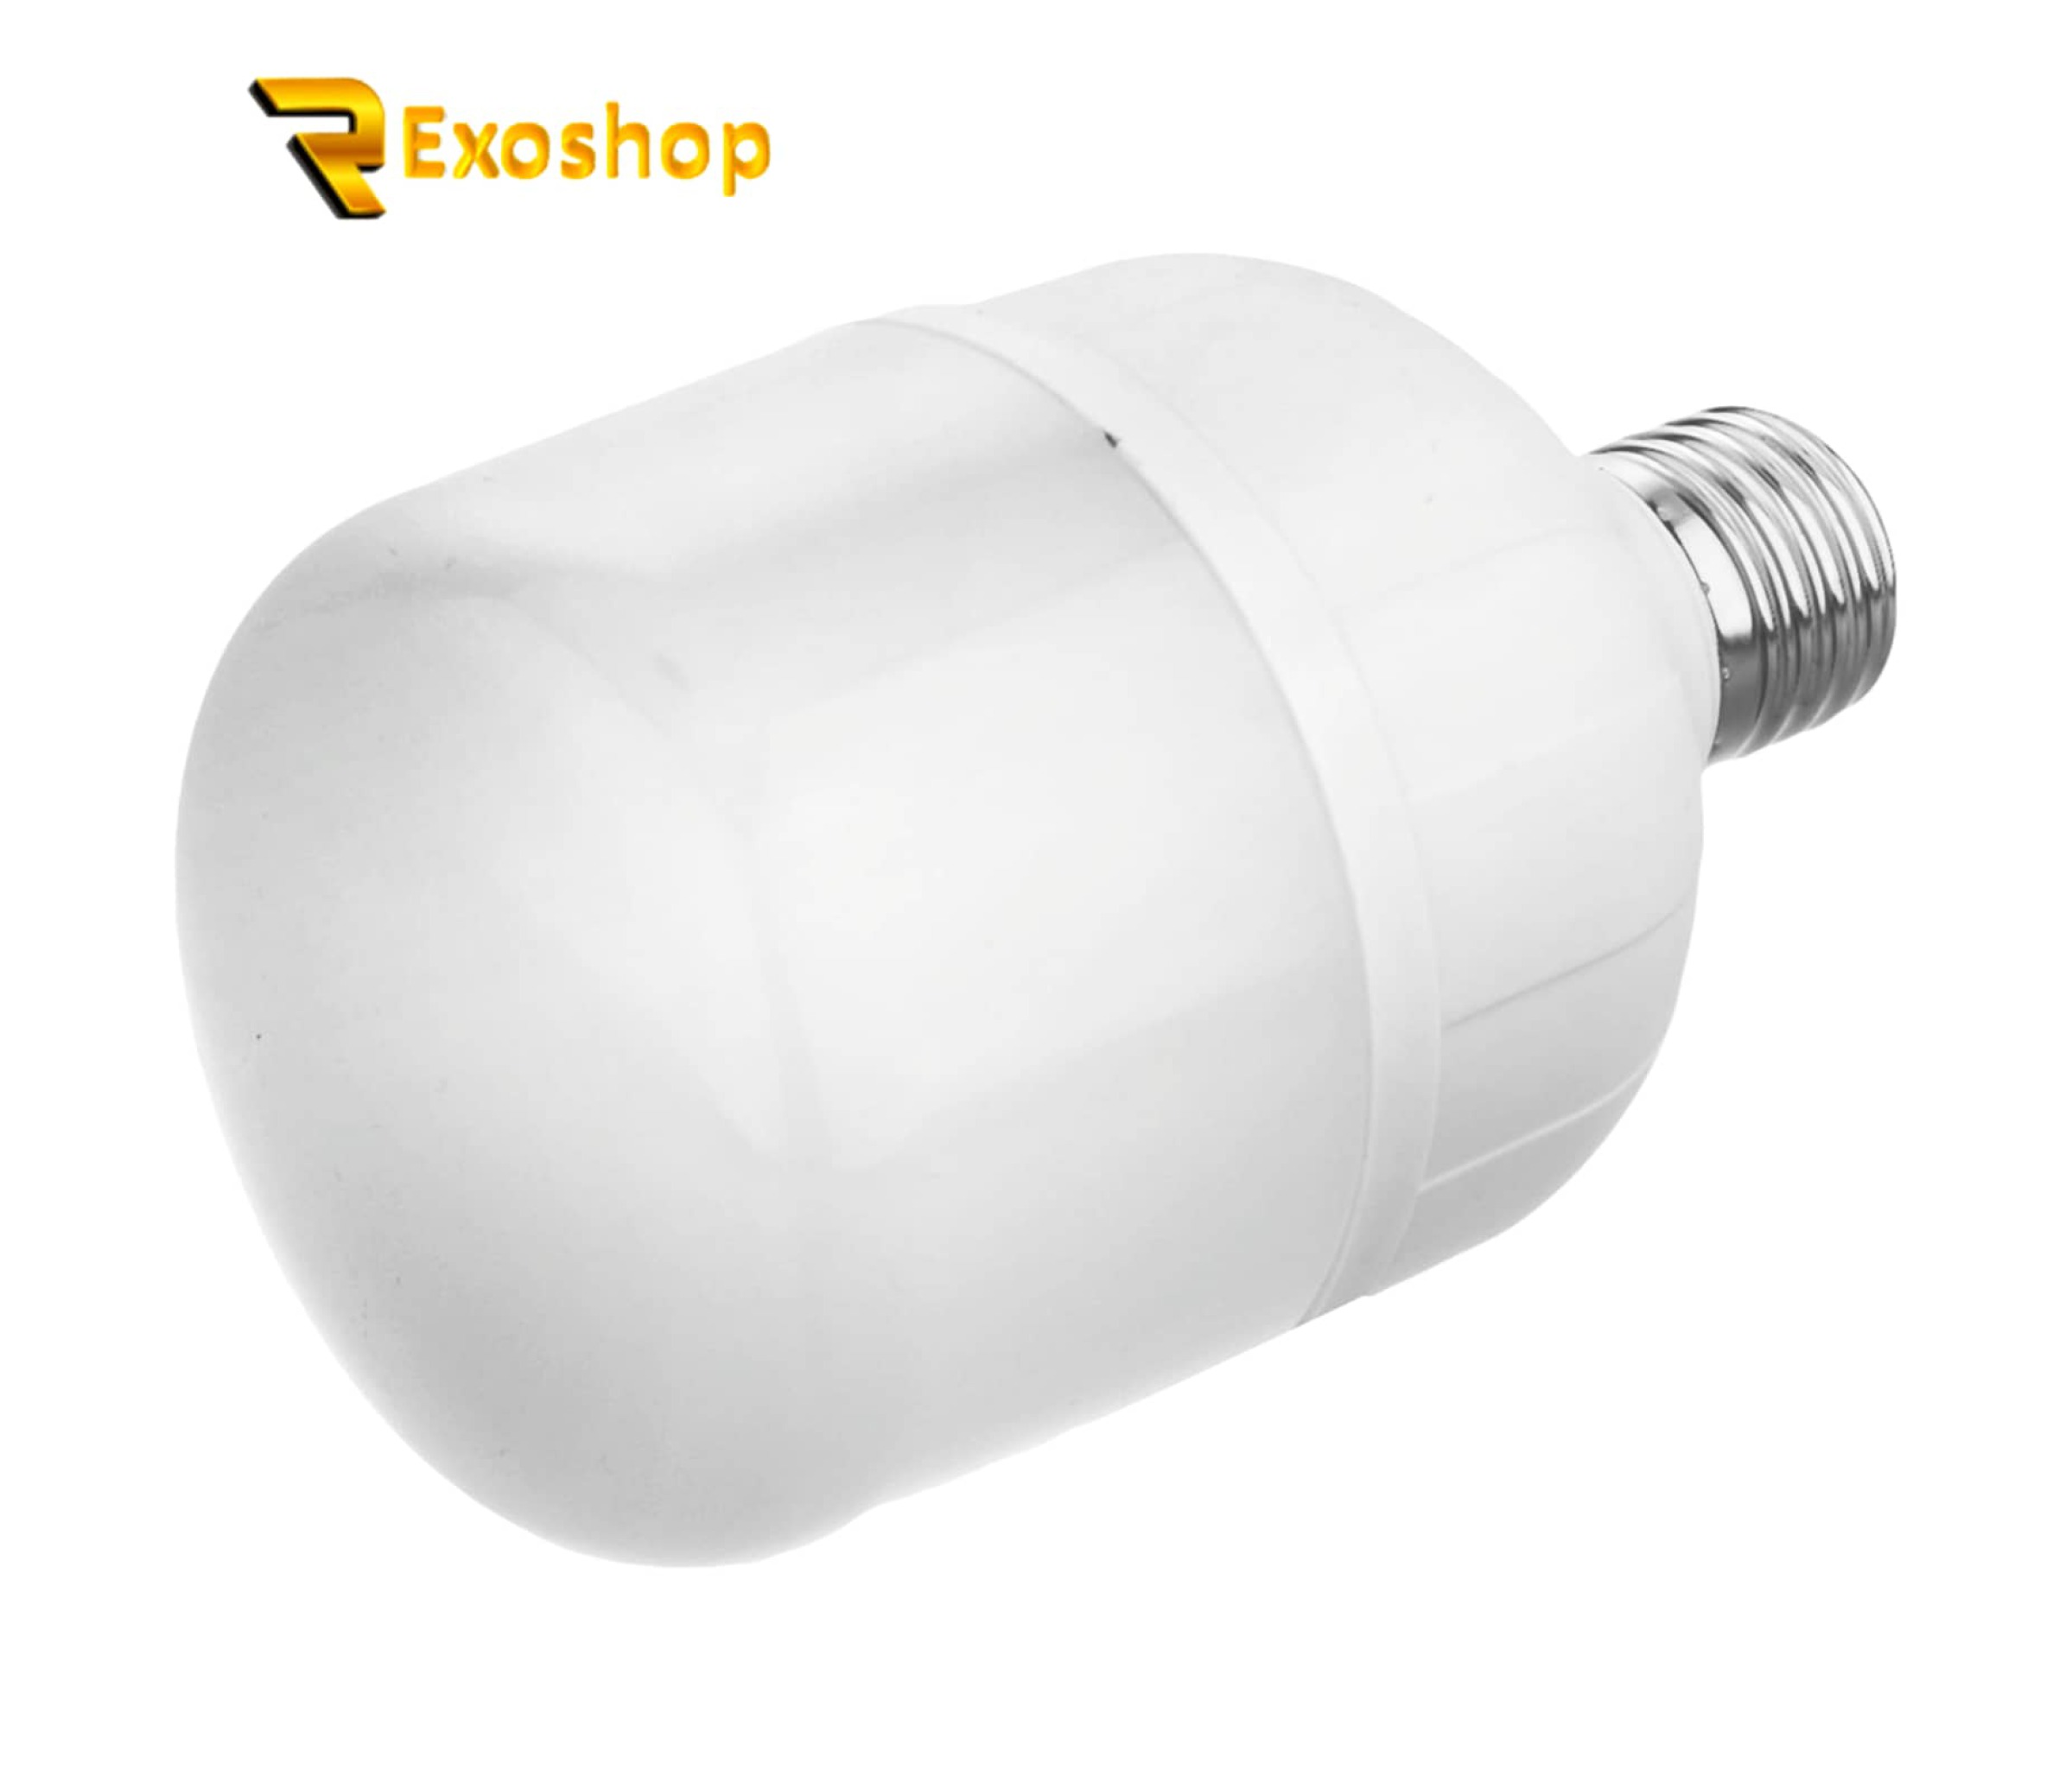  لامپ ال ای دی 20 وات لیتومکس کد 001 پایه E27 یکی از بهترین لامپ ها است که با بهترین کیفیت و قیمتی ارزان در رکسوشاپ است 